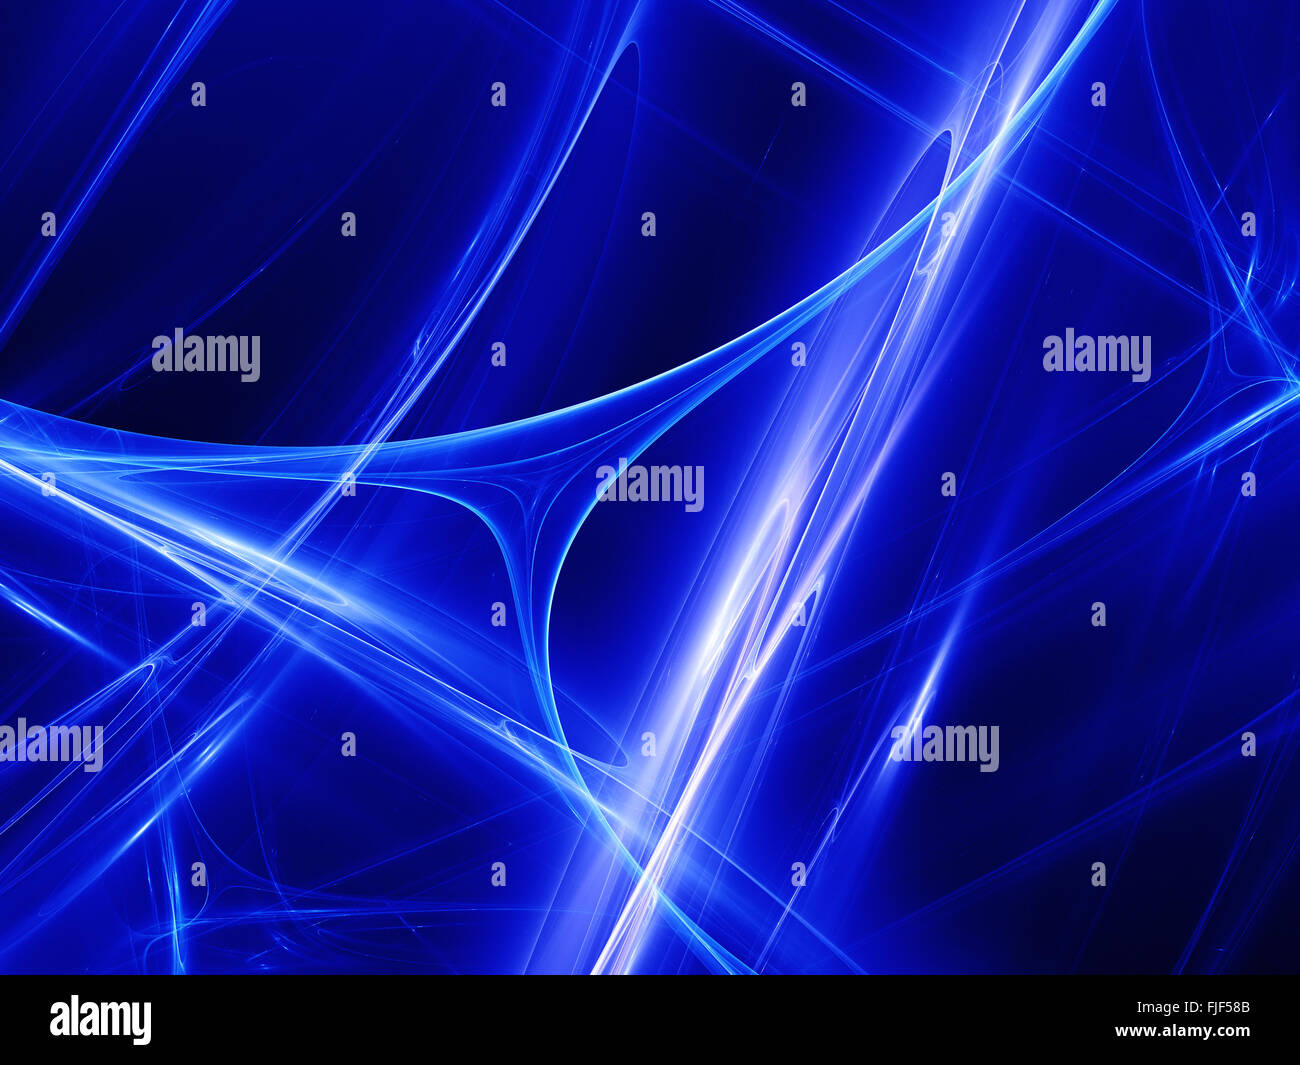 La technologie rougeoyant bleu des courbes dans l'espace, computer generated abstract background Banque D'Images